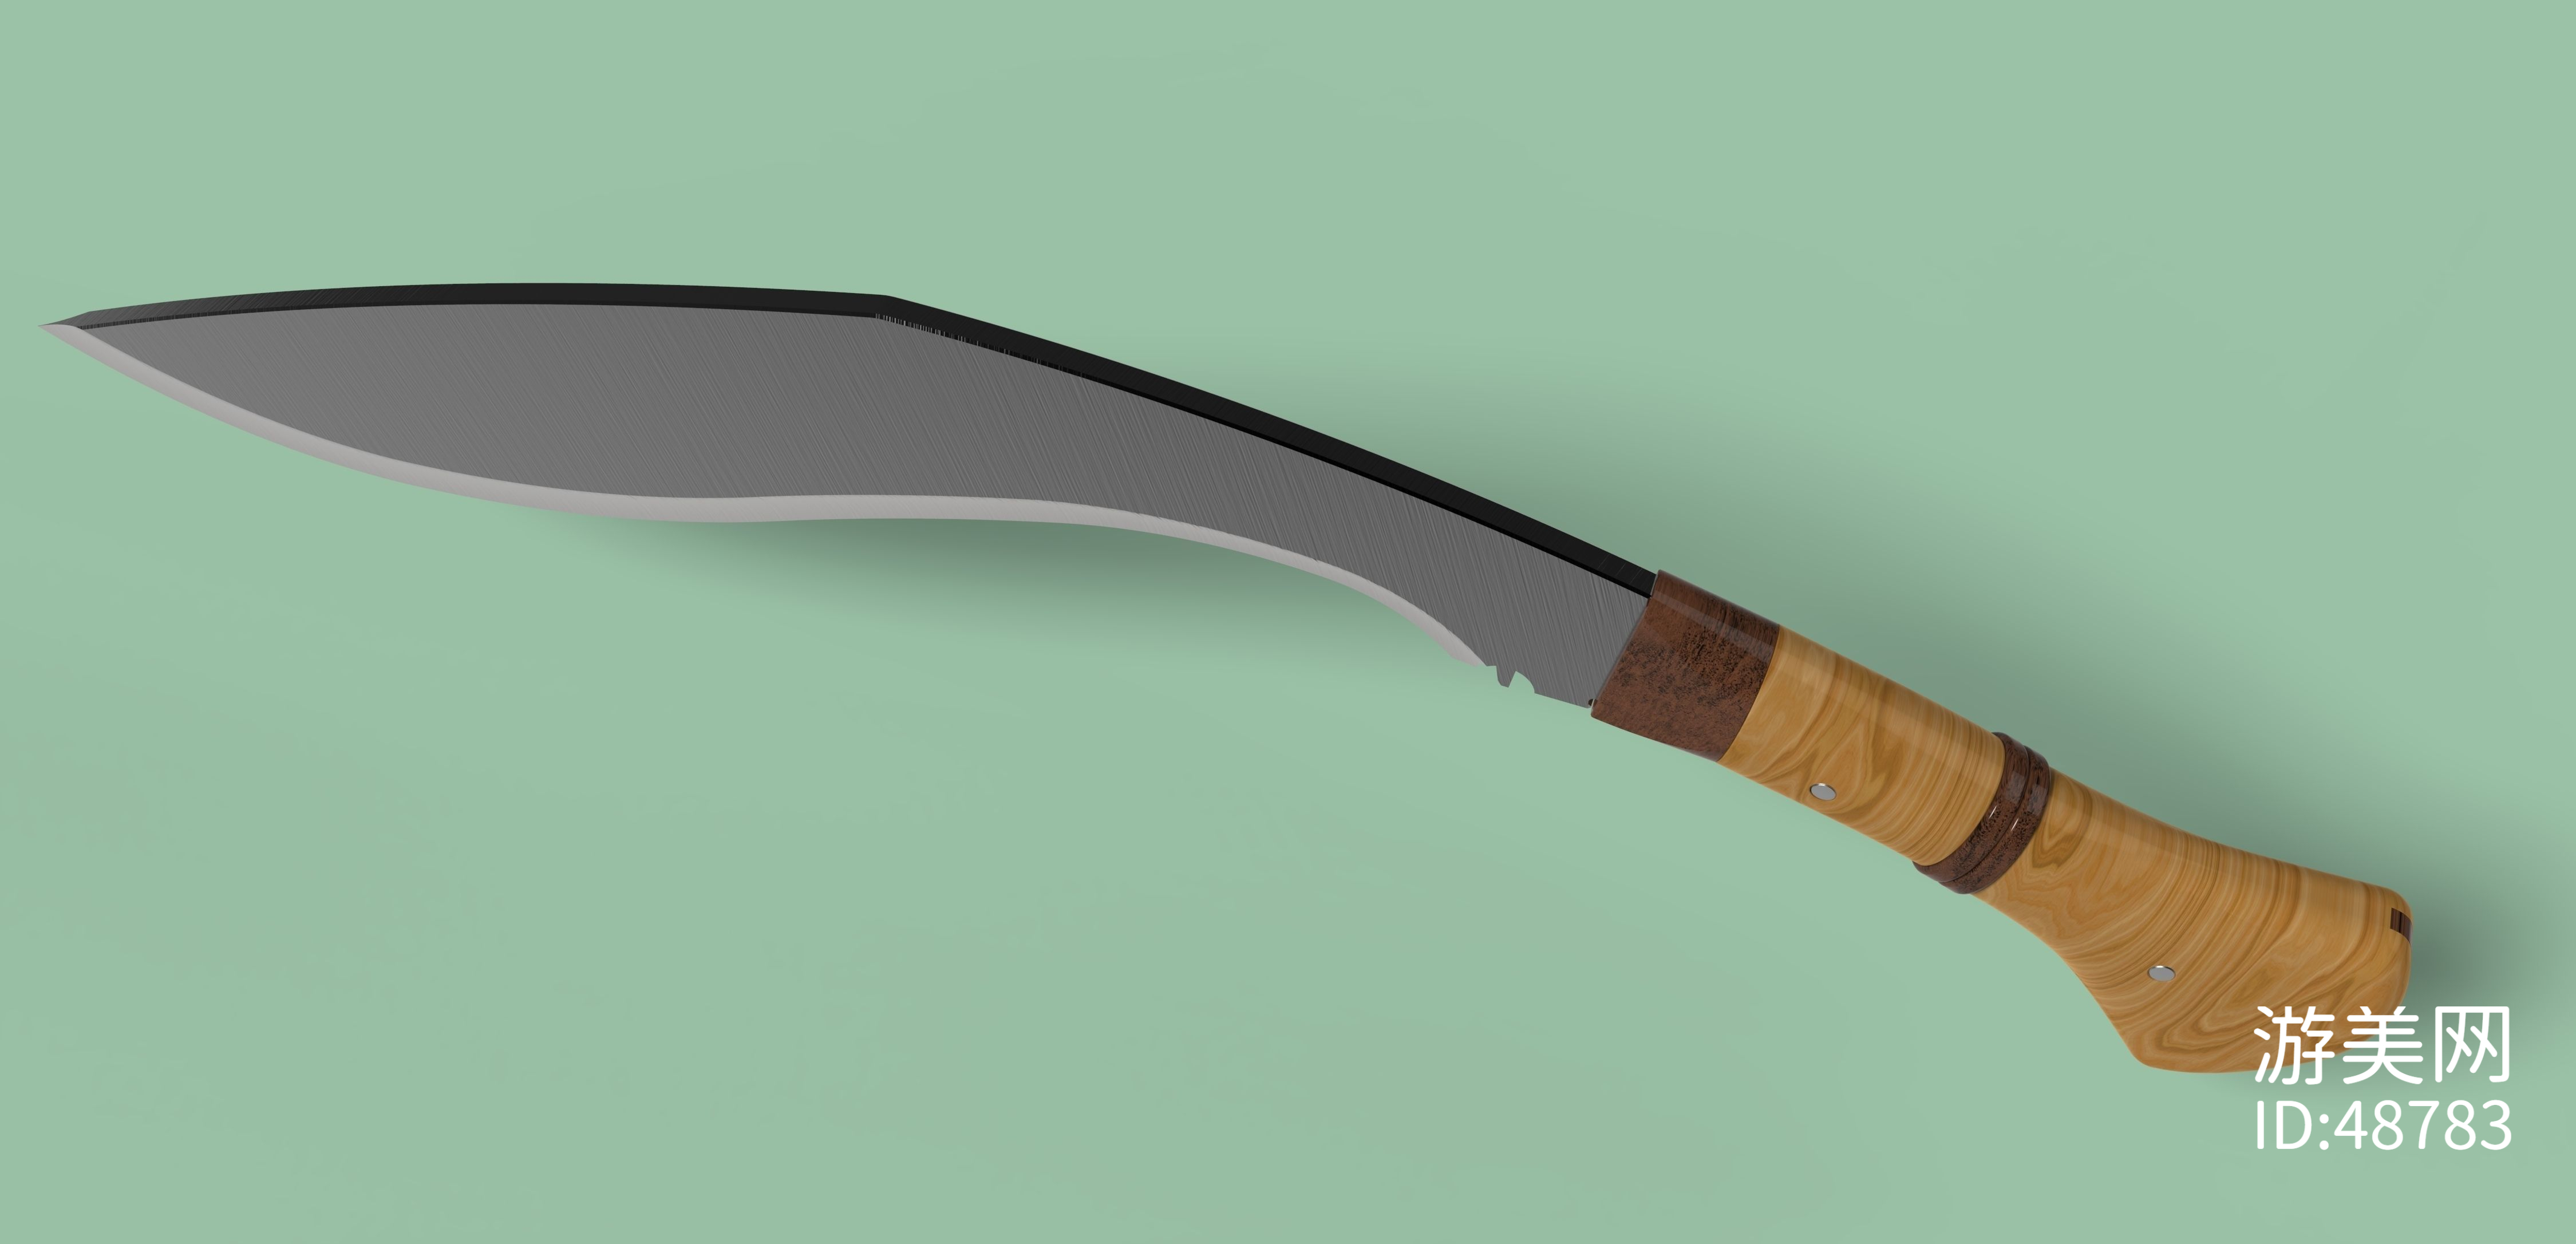 给现代大马士革刀工艺换个古名儿，你觉得哪个更合适？